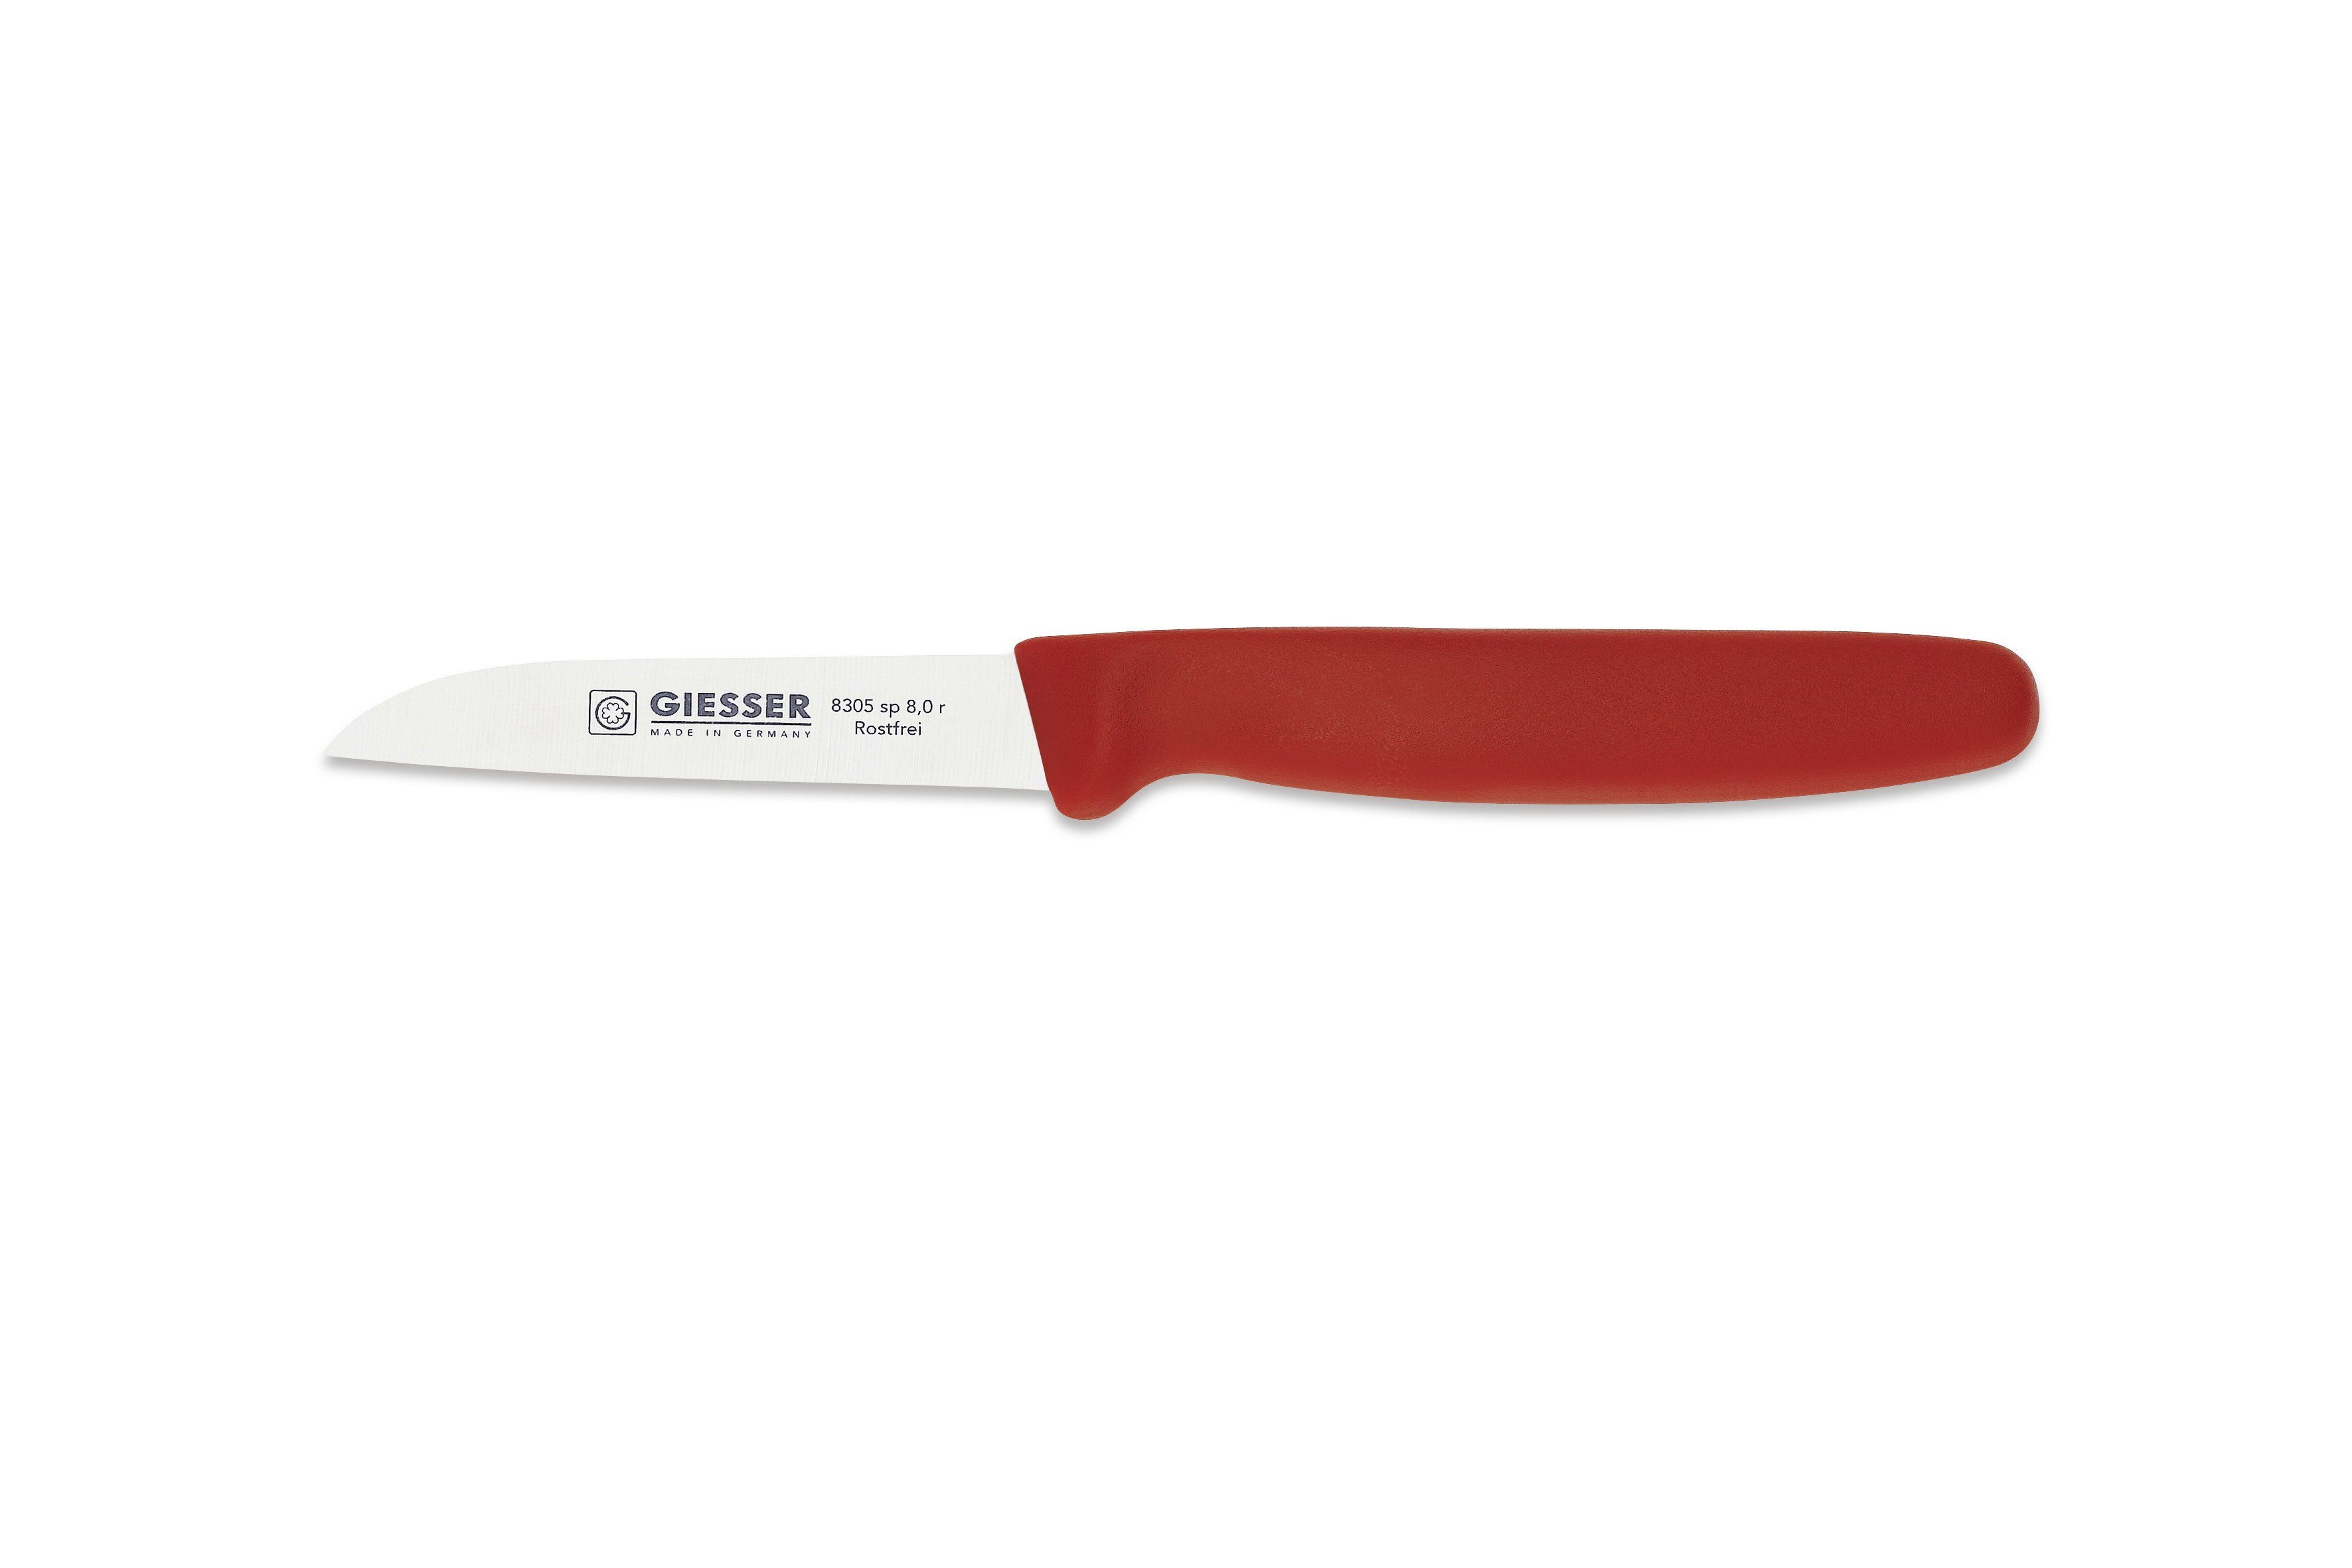 Giesser Messer Gemüsemesser Küchenmesser 8305 sp 8 alle Farben, Küchenmesser gerade Schneide 8 cm, Made in Germany Rot